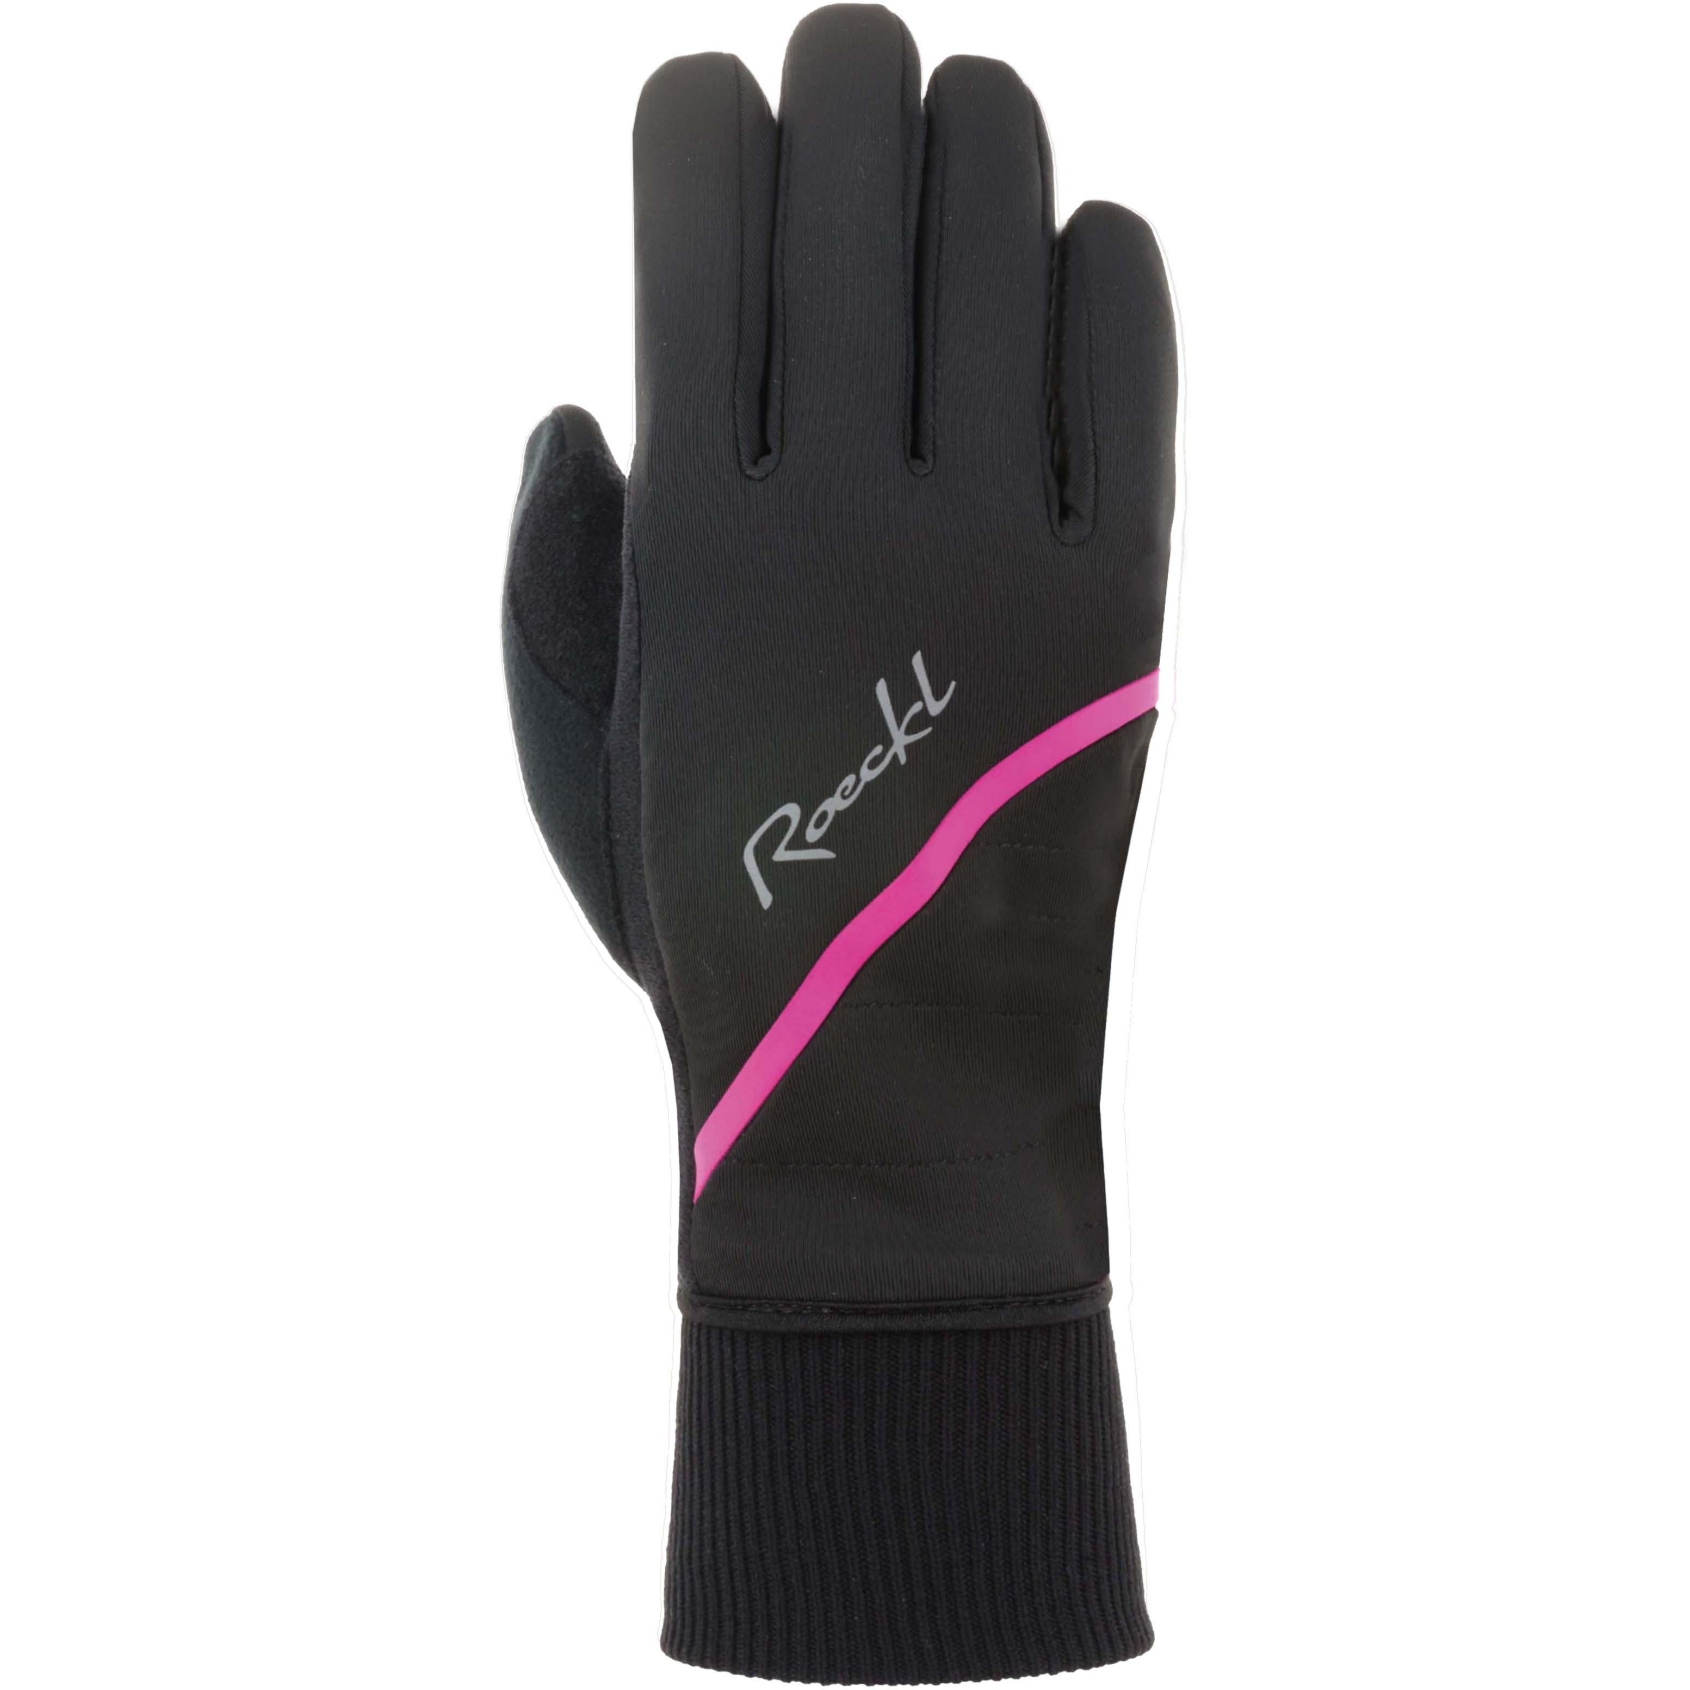 Produktbild von Roeckl Sports Eriz Winterhandschuhe Damen - black/pop pink 9401